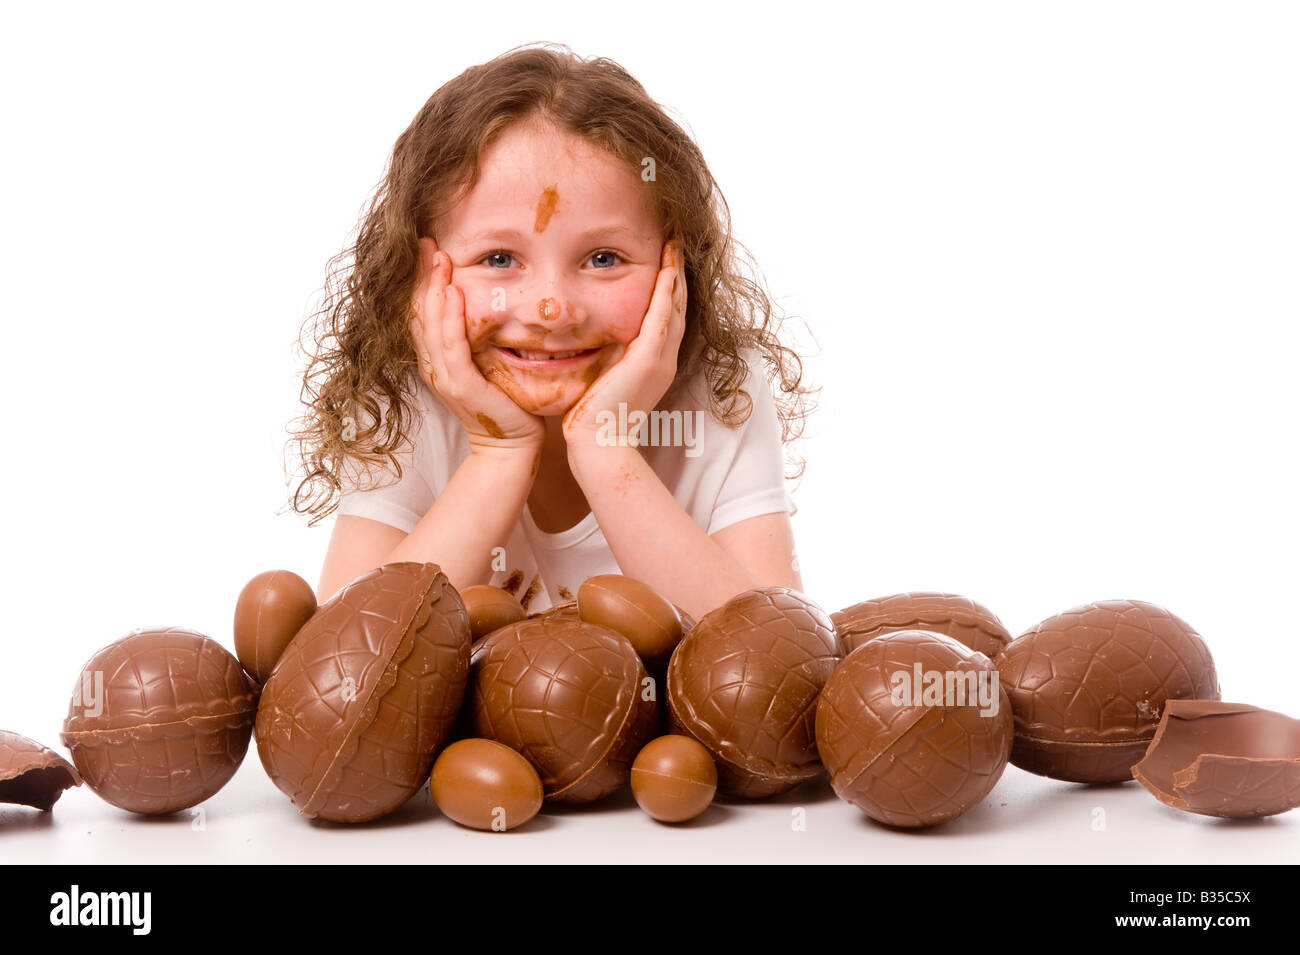 Jeune enfant souriant se reposant la tête dans ses mains enrobées de chocolat devant beaucoup d'oeufs de Pâques. Banque D'Images